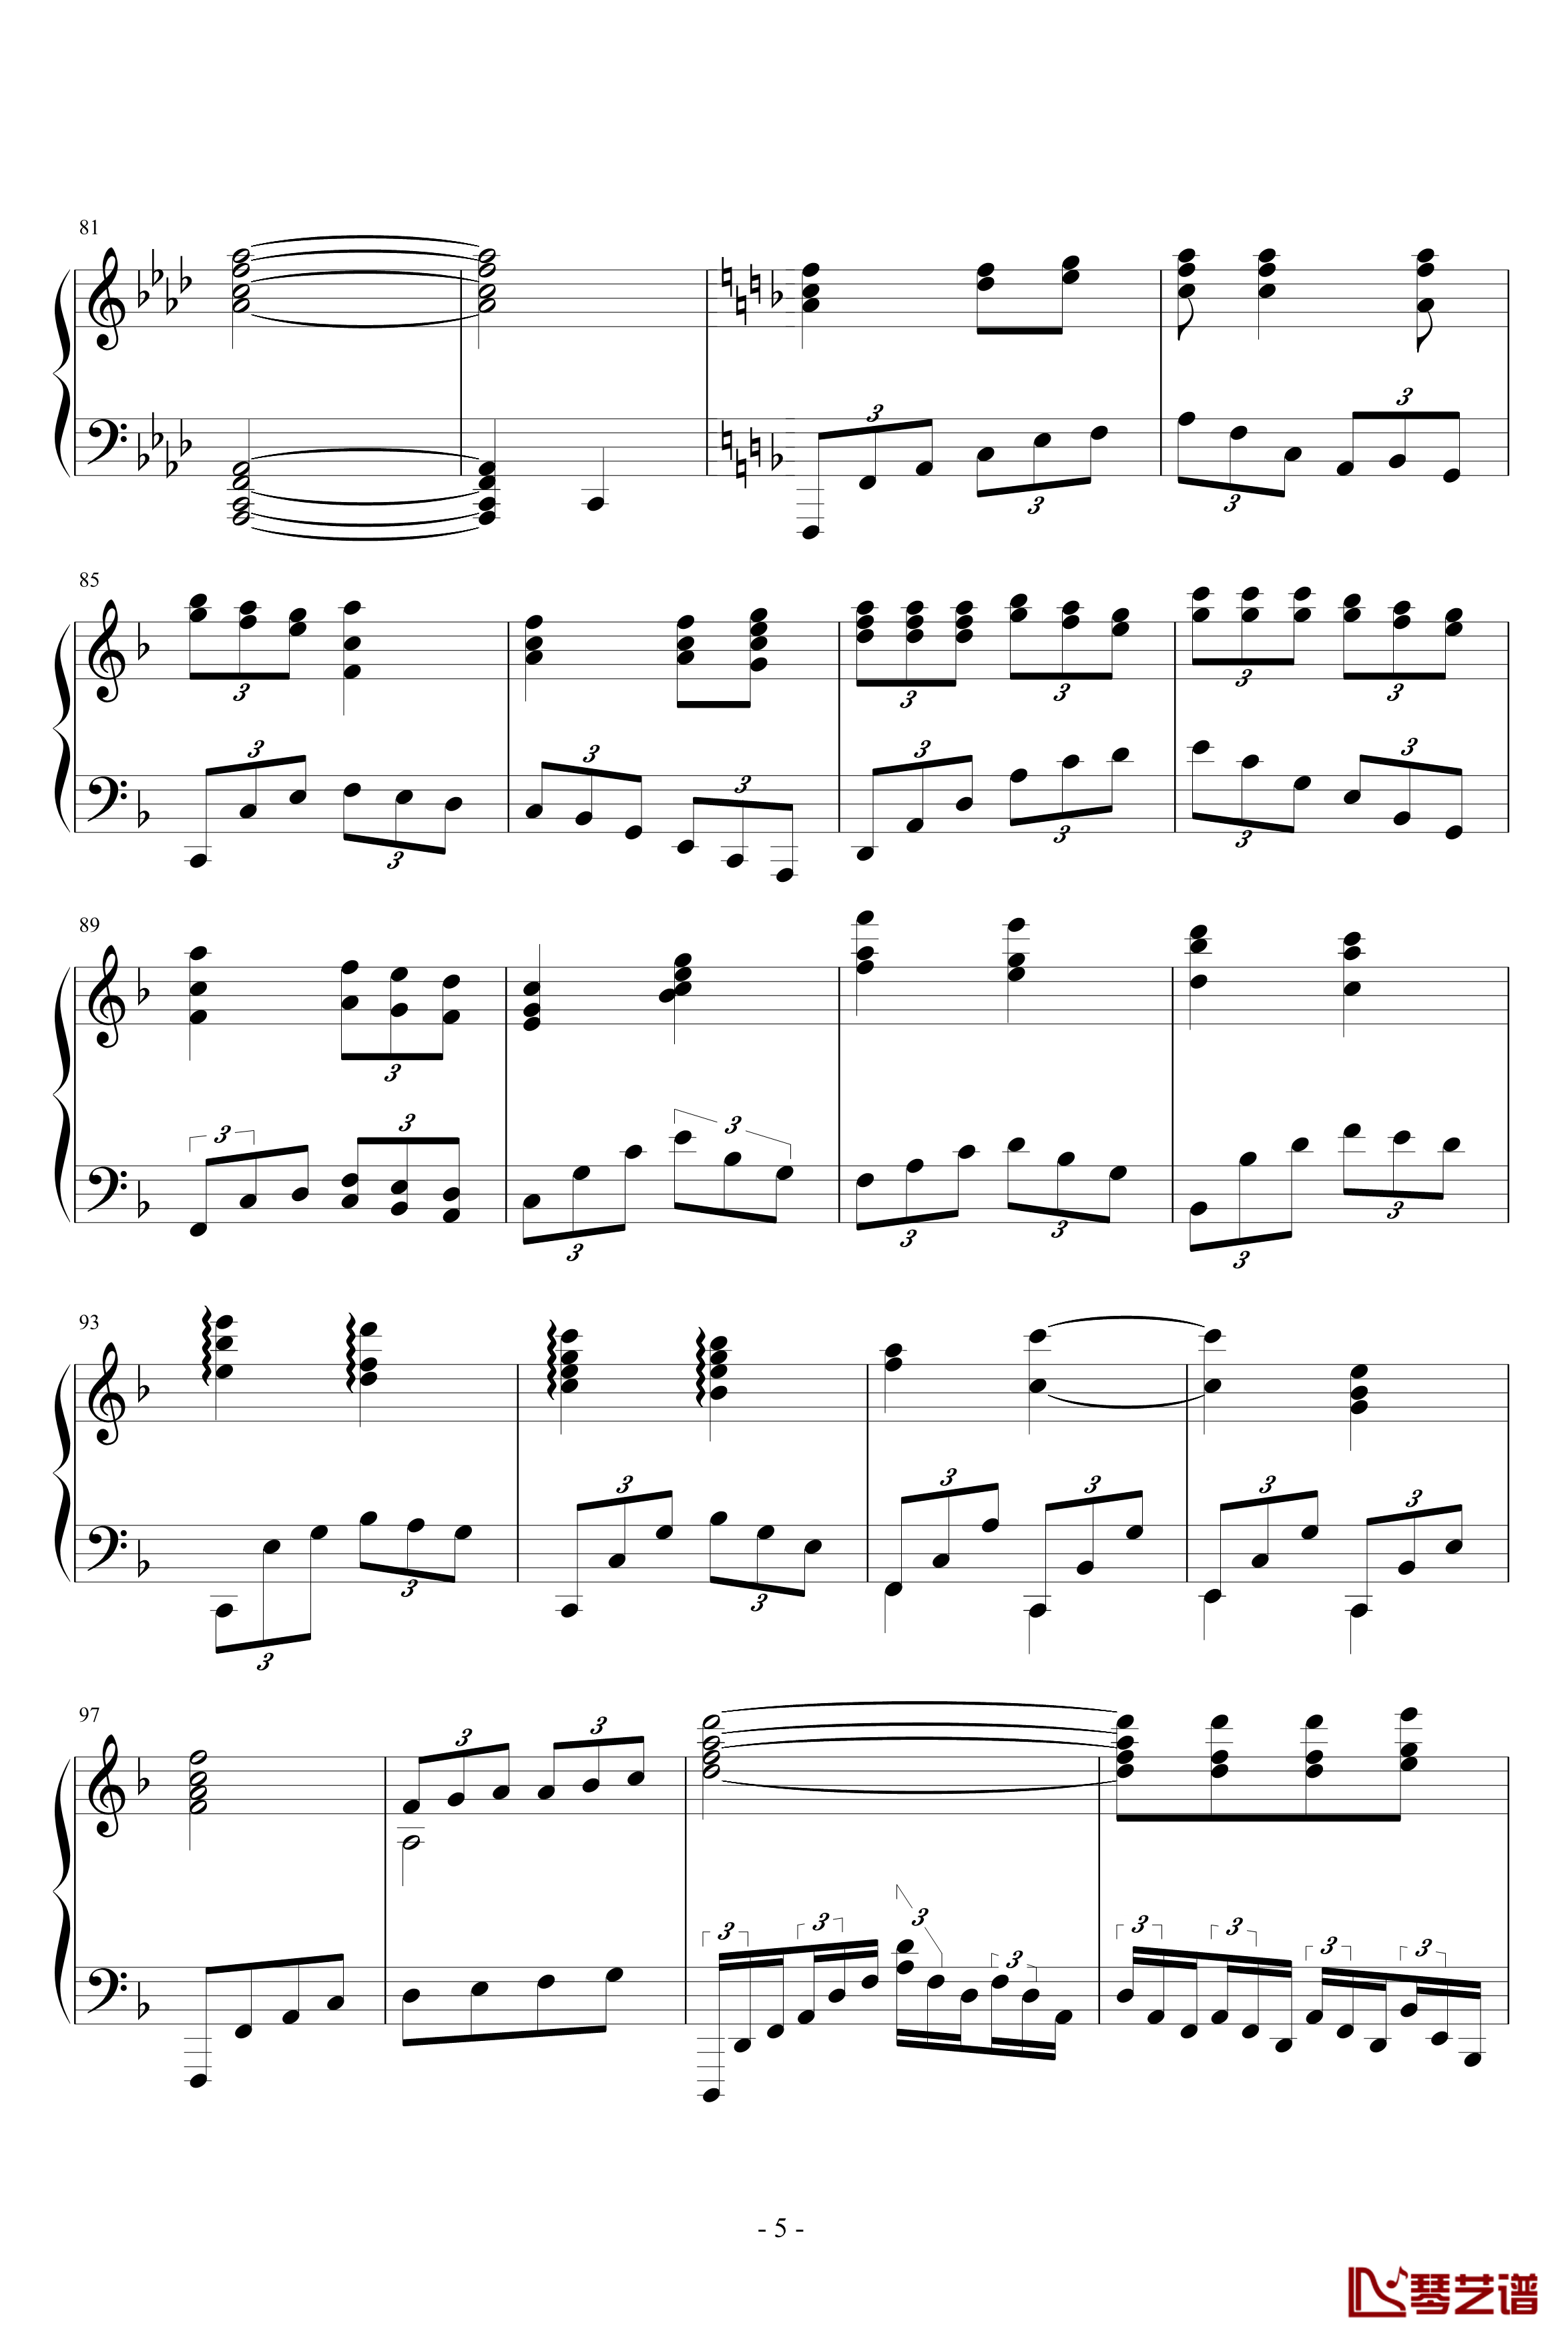 F小调前奏曲钢琴谱-PARROT186